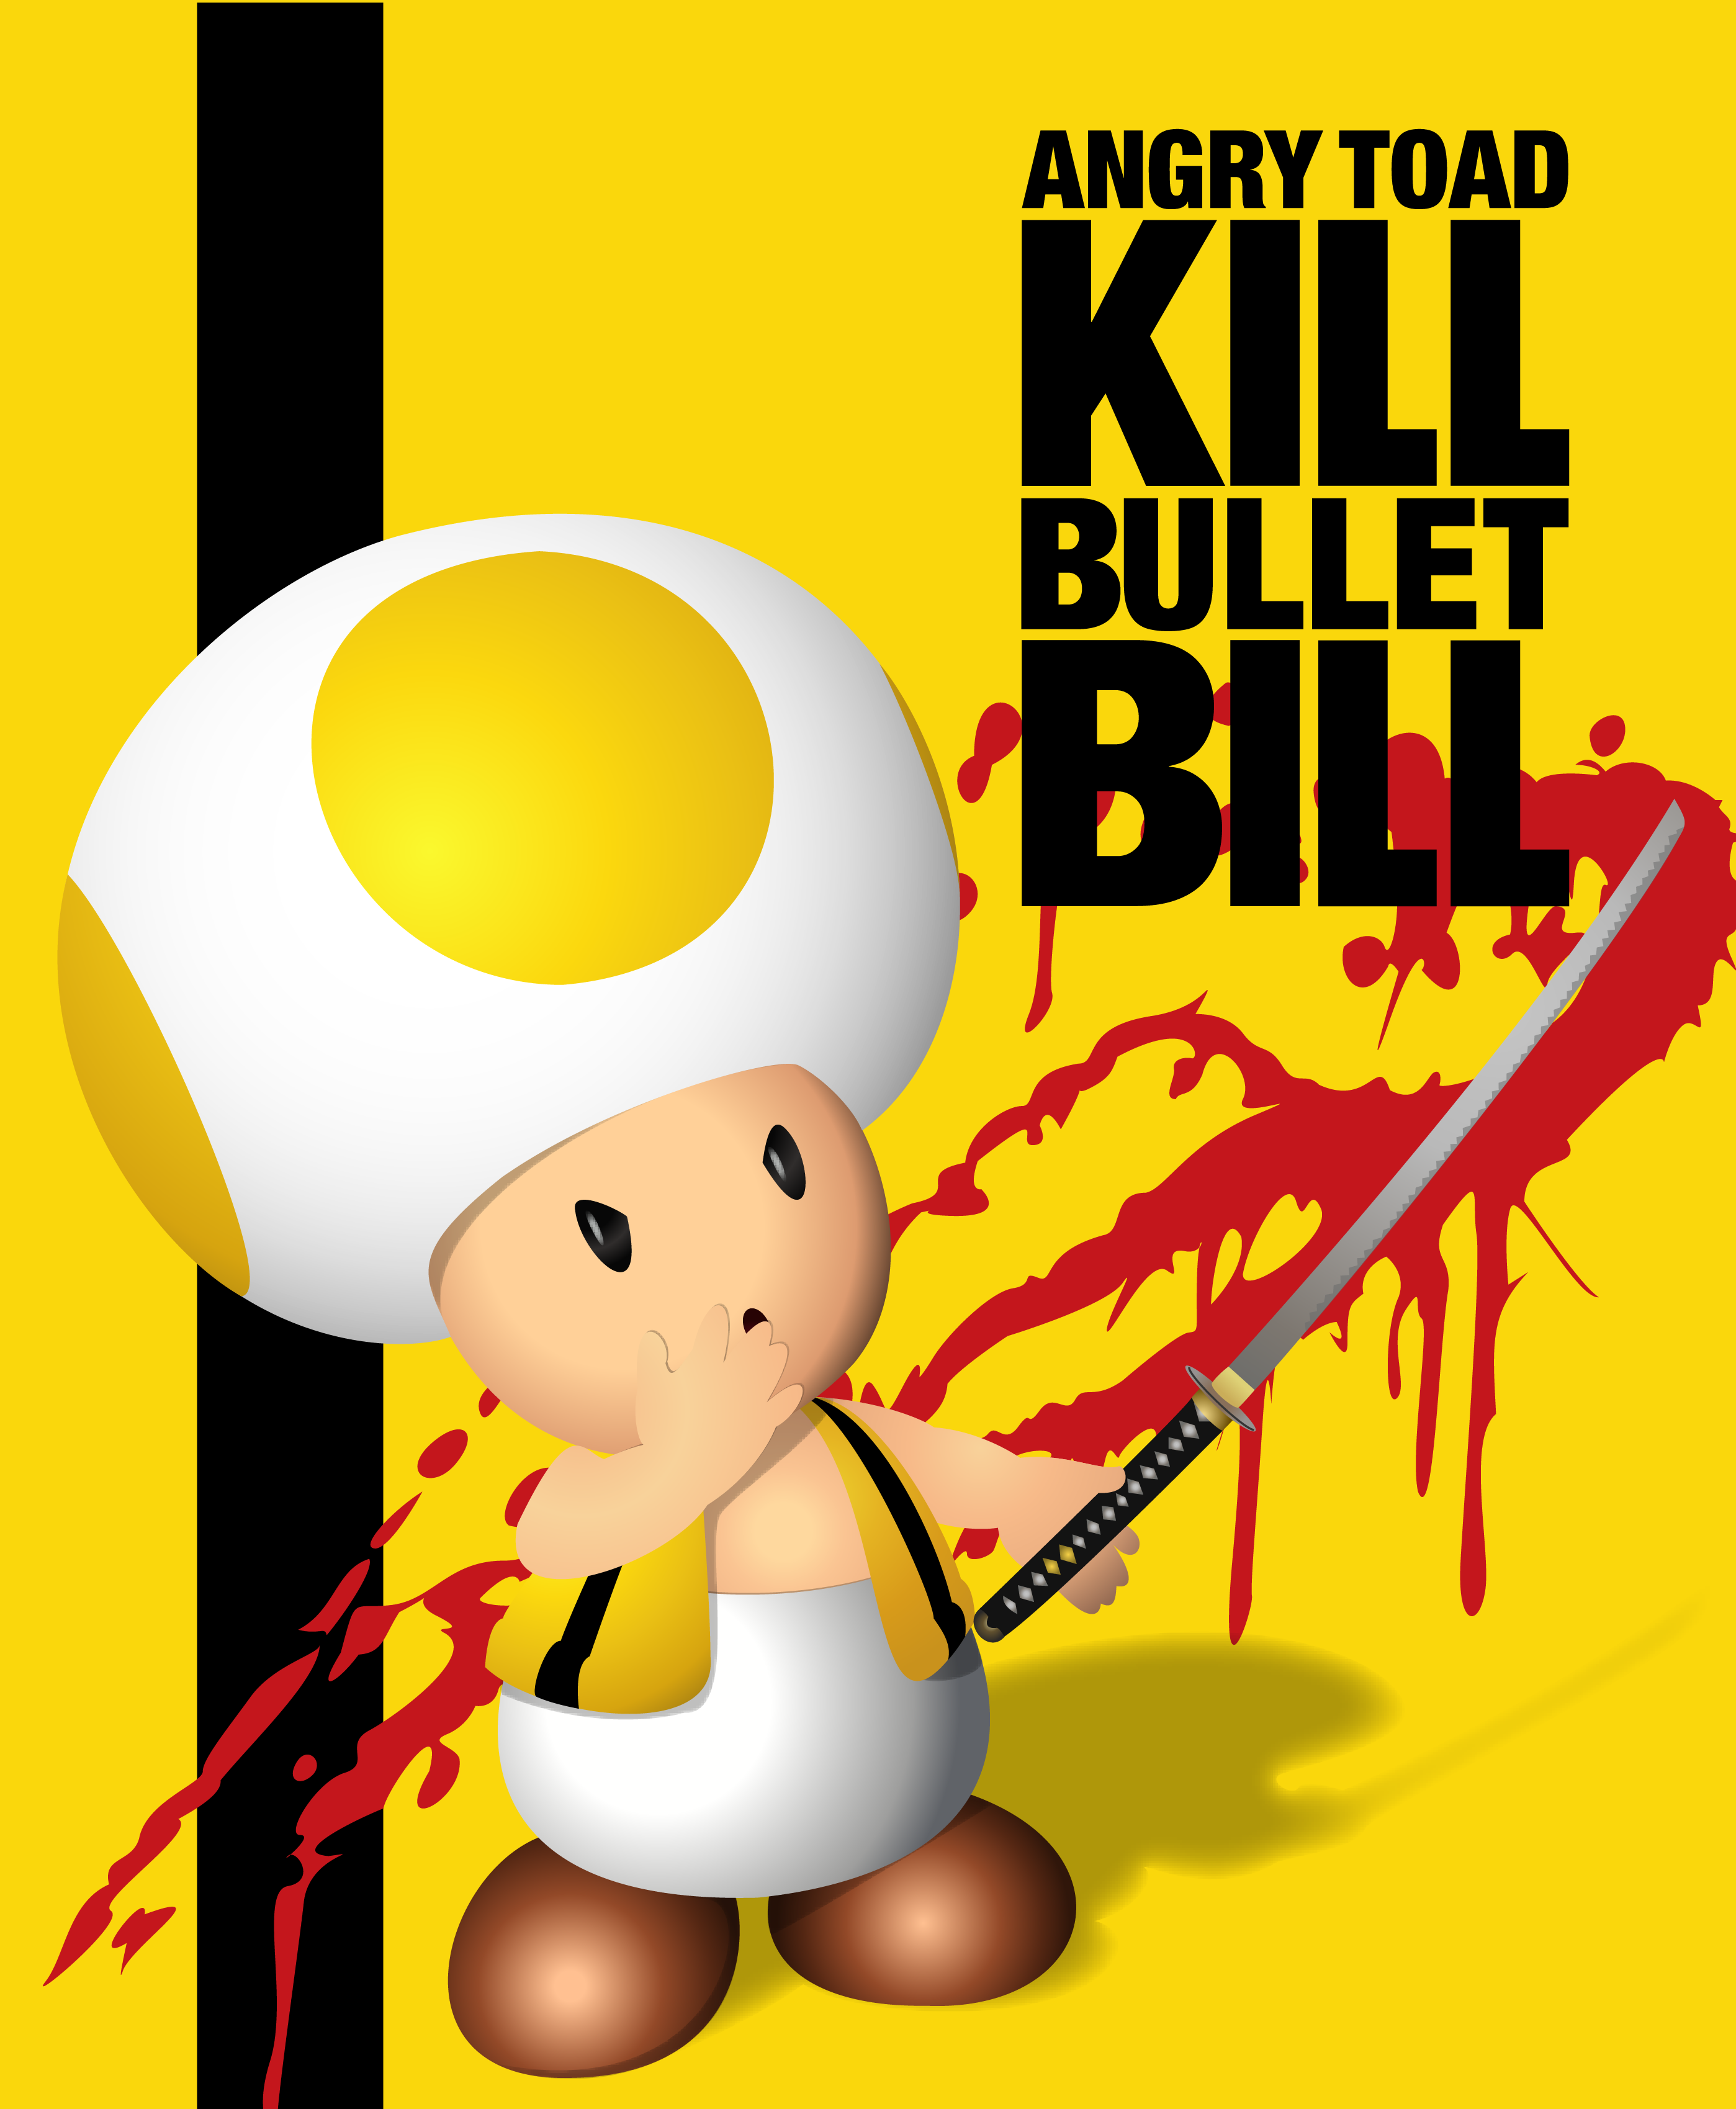 Kill Bullet Bill Poster by Matt2tB-Portfolio on DeviantArt